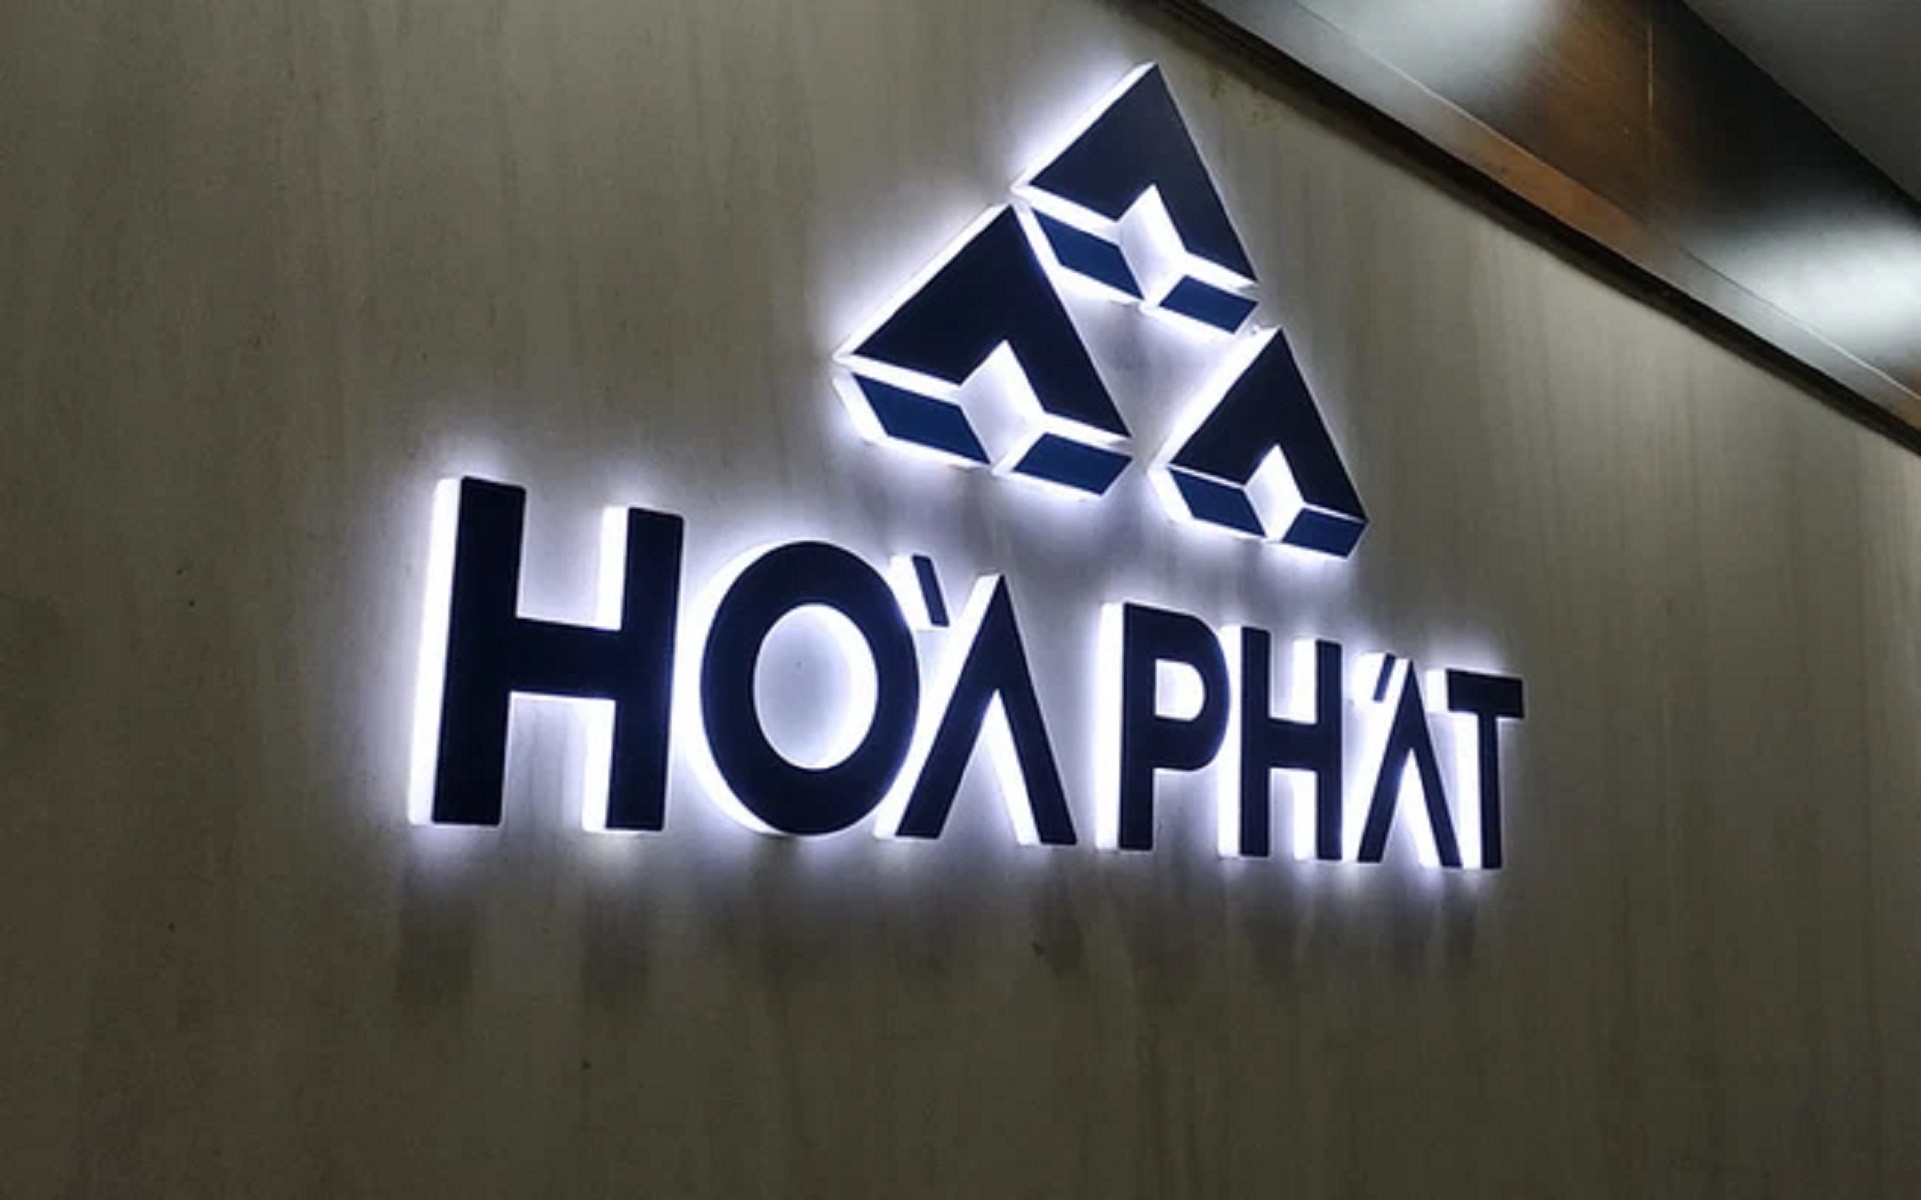 

Tập đoàn Hòa Phát (HoSE: HPG) mới đây đã thông báo ngày 20/6 sẽ là ngày đăng ký cuối cùng lập danh sách cổ đông chi trả cổ tức năm 2021
